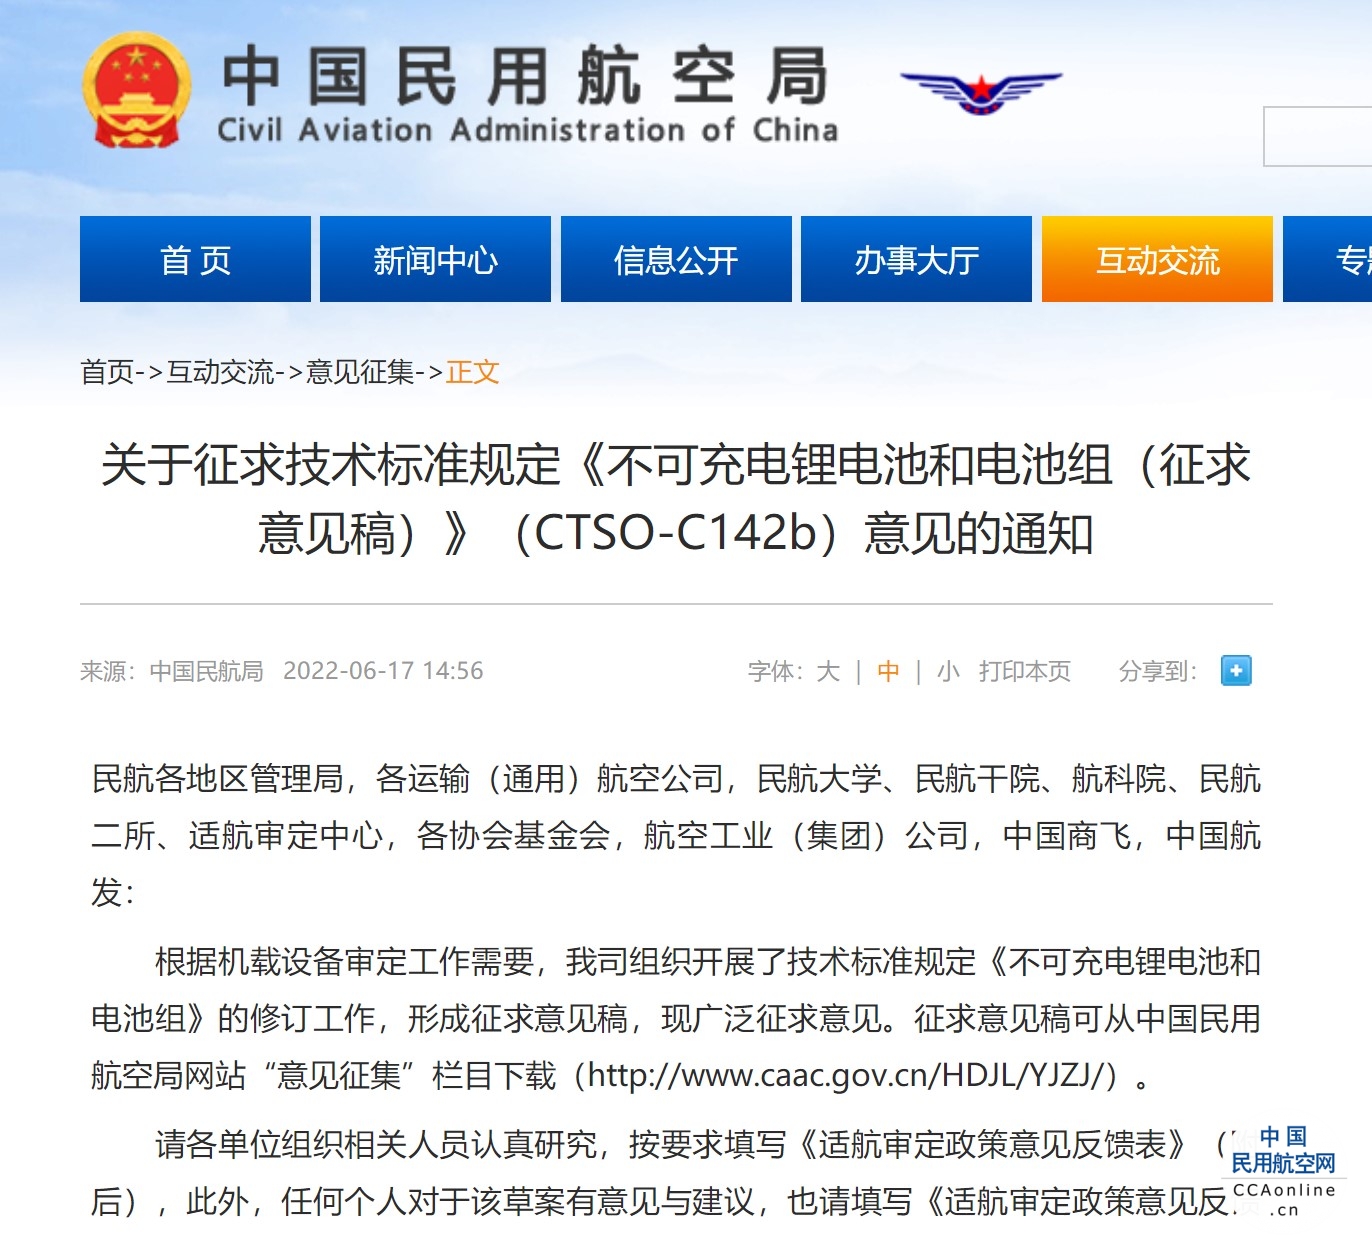 民航局发布关于征求技术标准规定《不可充电锂电池和电池组（征求意见稿）》（CTSO-C142b）意见的通知